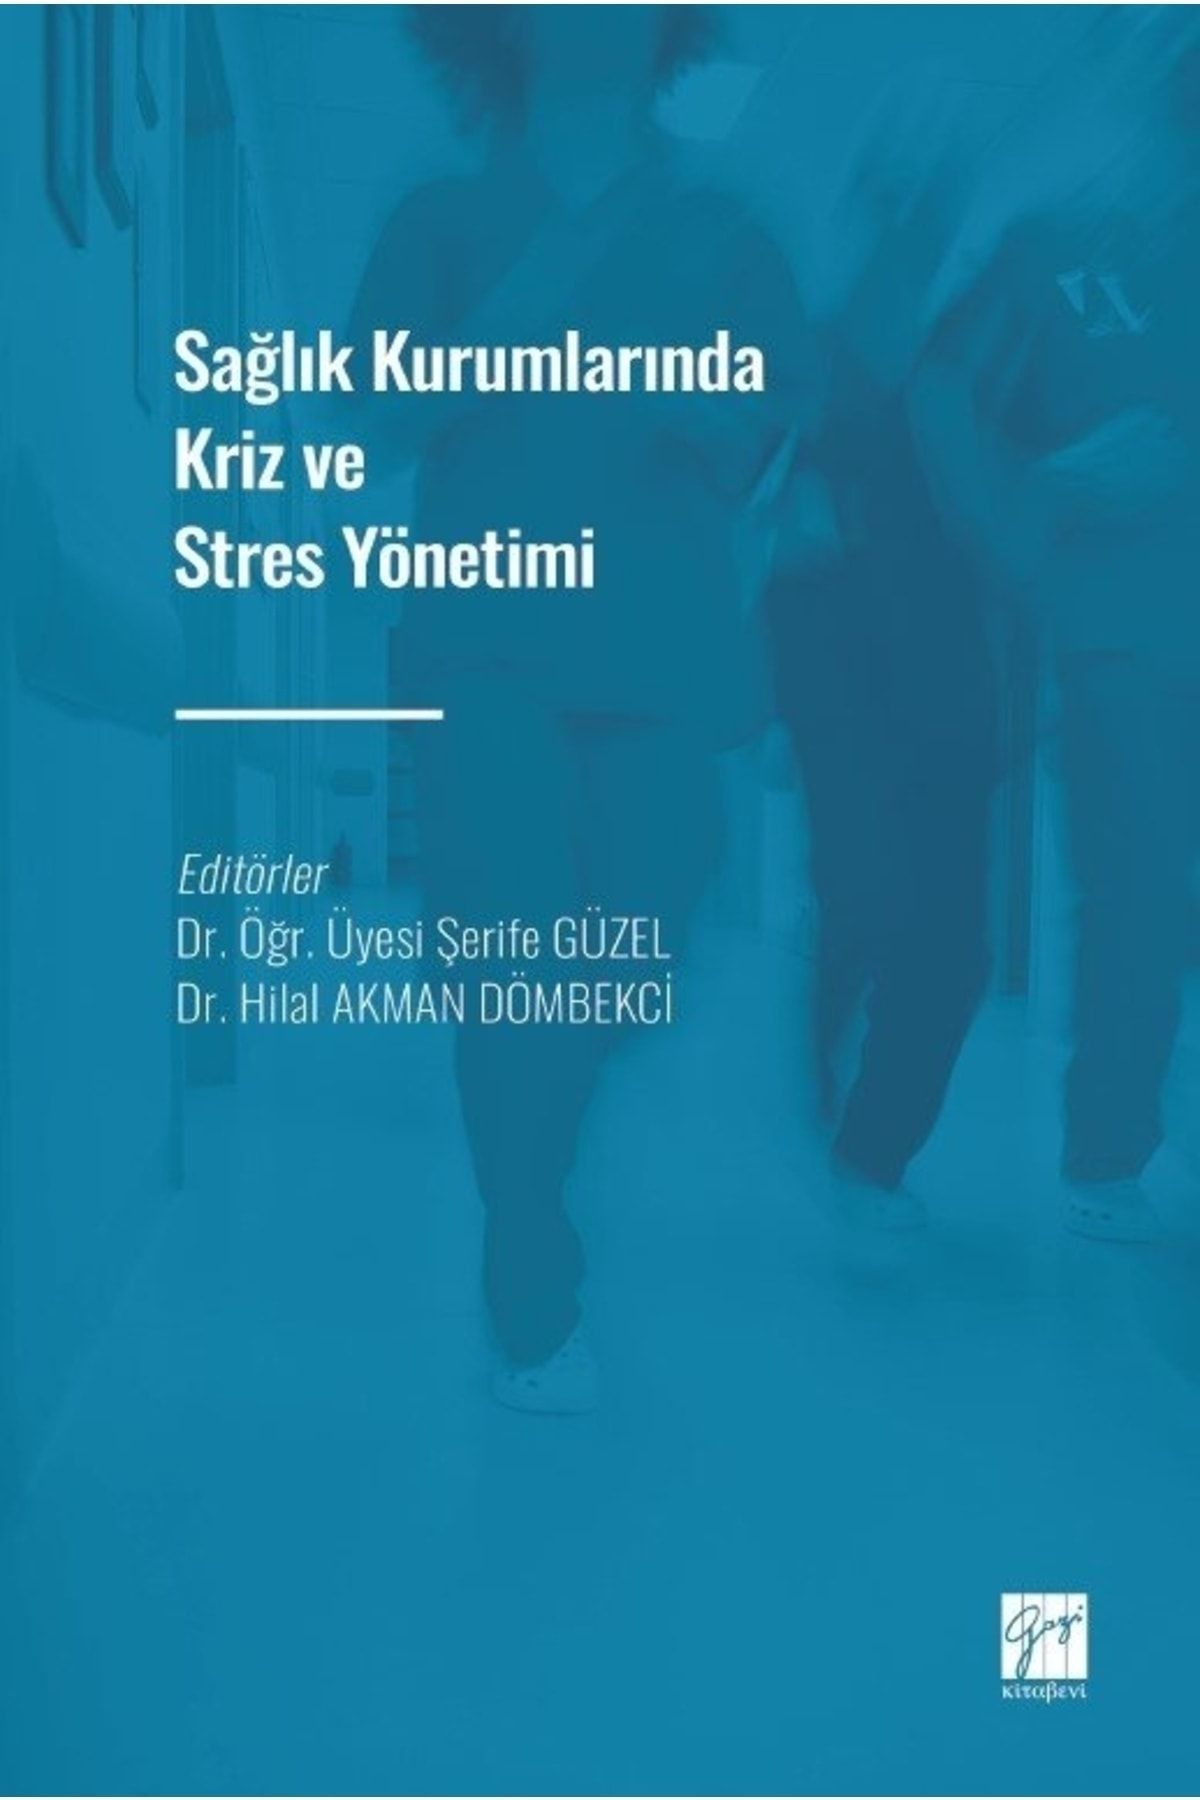 Gazi Kitabevi Sağlık Kurumlarında Kriz ve Stres Yönetimi kitabı - Gazi Kitabevi